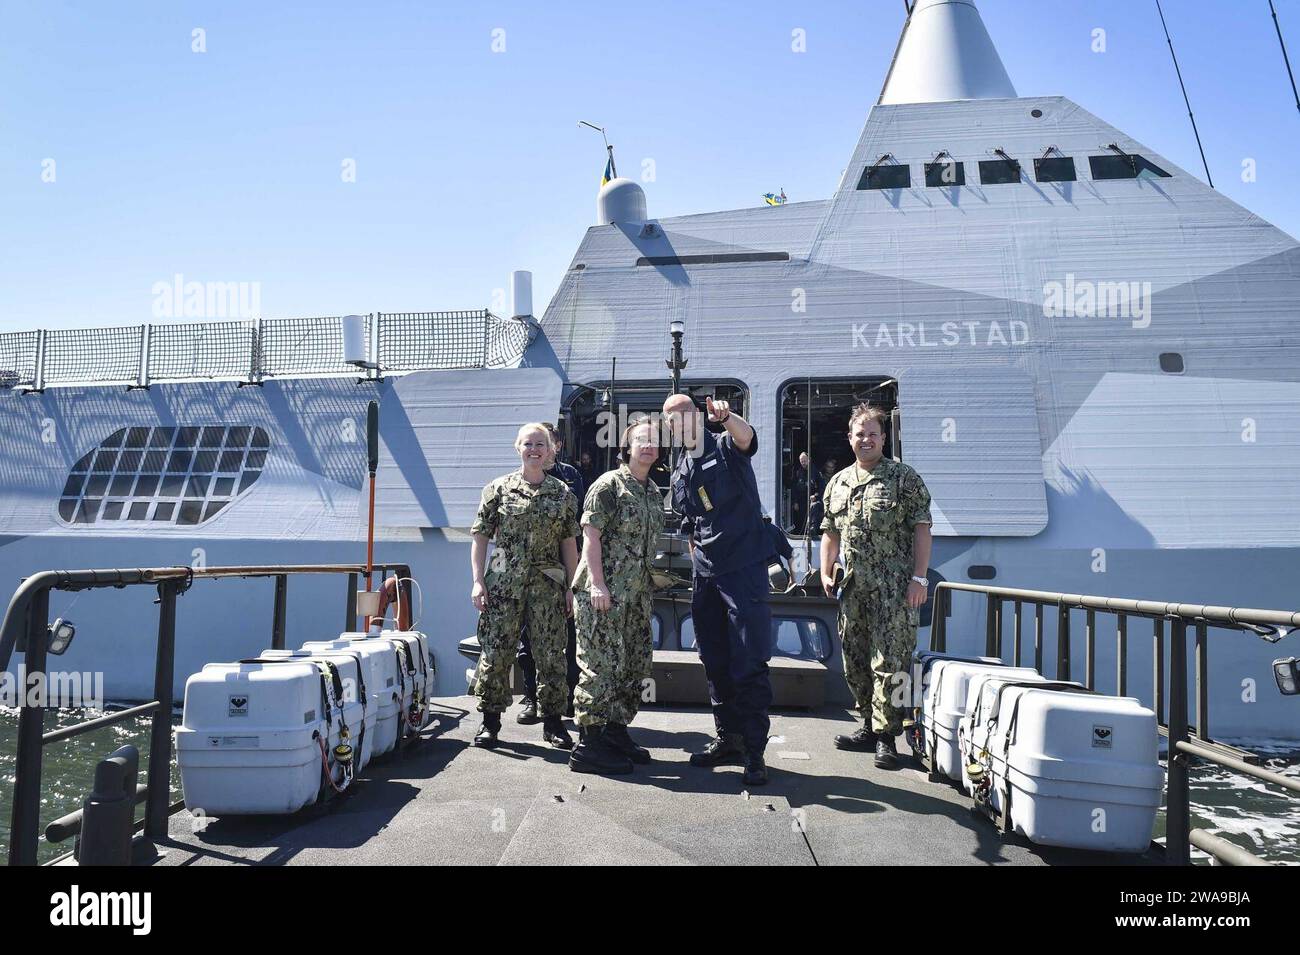 Forces militaires AMÉRICAINES. 180611XT273-933 KARLSKRONA, Suède (le 11 juin 2018) la vice-amiral Lisa M. Franchetti, commandant de la 6e flotte américaine et commandant des Forces navales de frappe et de soutien de l'OTAN, s'entretient avec le contre-amiral Jens Nykvist, chef d'état-major de la Marine royale suédoise, lors d'une visite à la Royal Swedish Navy Corvette HMS Karlstad (K35) de classe Visby au cours de l'exercice Baltic Operations (BALTOPS) 2018 à Karlskrona, Suède, juin 11. BALTOPS est le premier exercice annuel axé sur la mer dans la région de la Baltique et l'un des plus grands exercices en Europe du Nord, améliorant la flexibilité et l'interopérabilité entre les alliés Banque D'Images